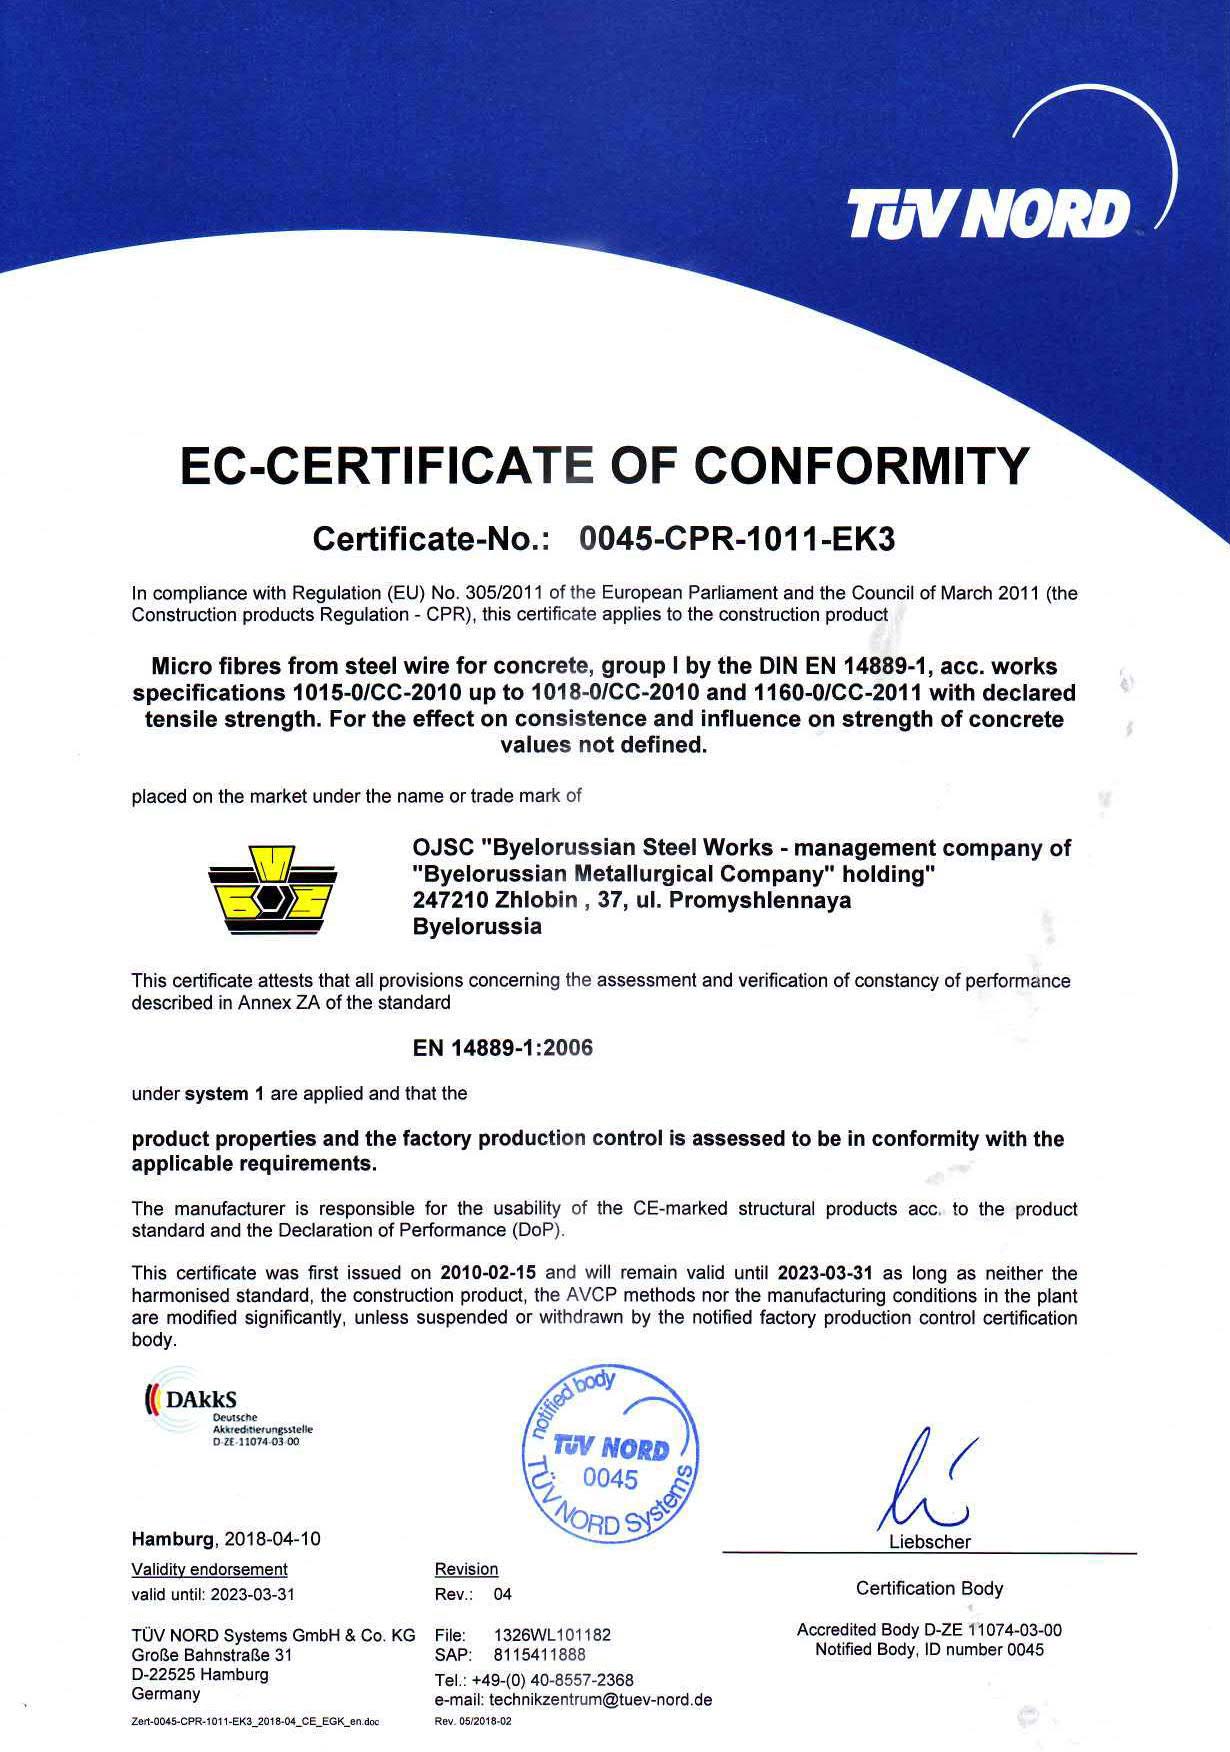 Cертификат TUV NORD (Германия) № 0045-CPR-1011-EK3 на производство стальной микрофибры для армирования бетона в соответствии с EN 14889-1:2006 и Европейским строительным регламентом 305/2011 (право нанесения СЕ маркировки)